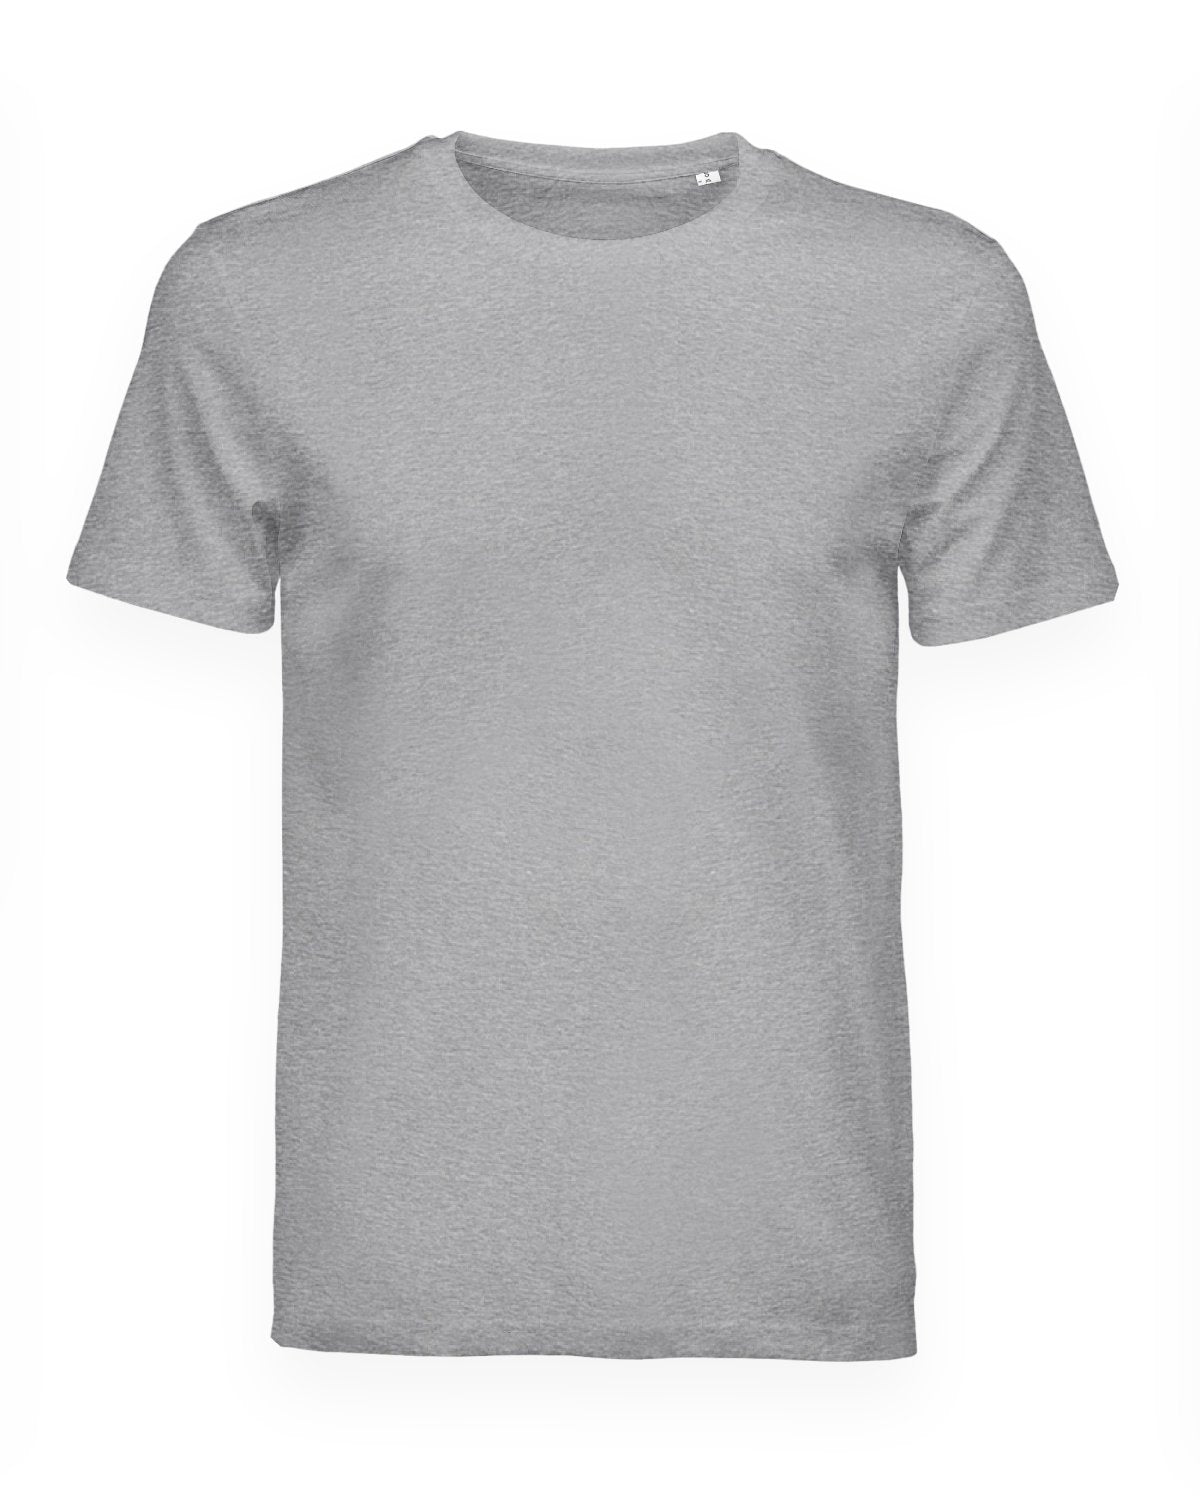 Tee-shirt gris chiné